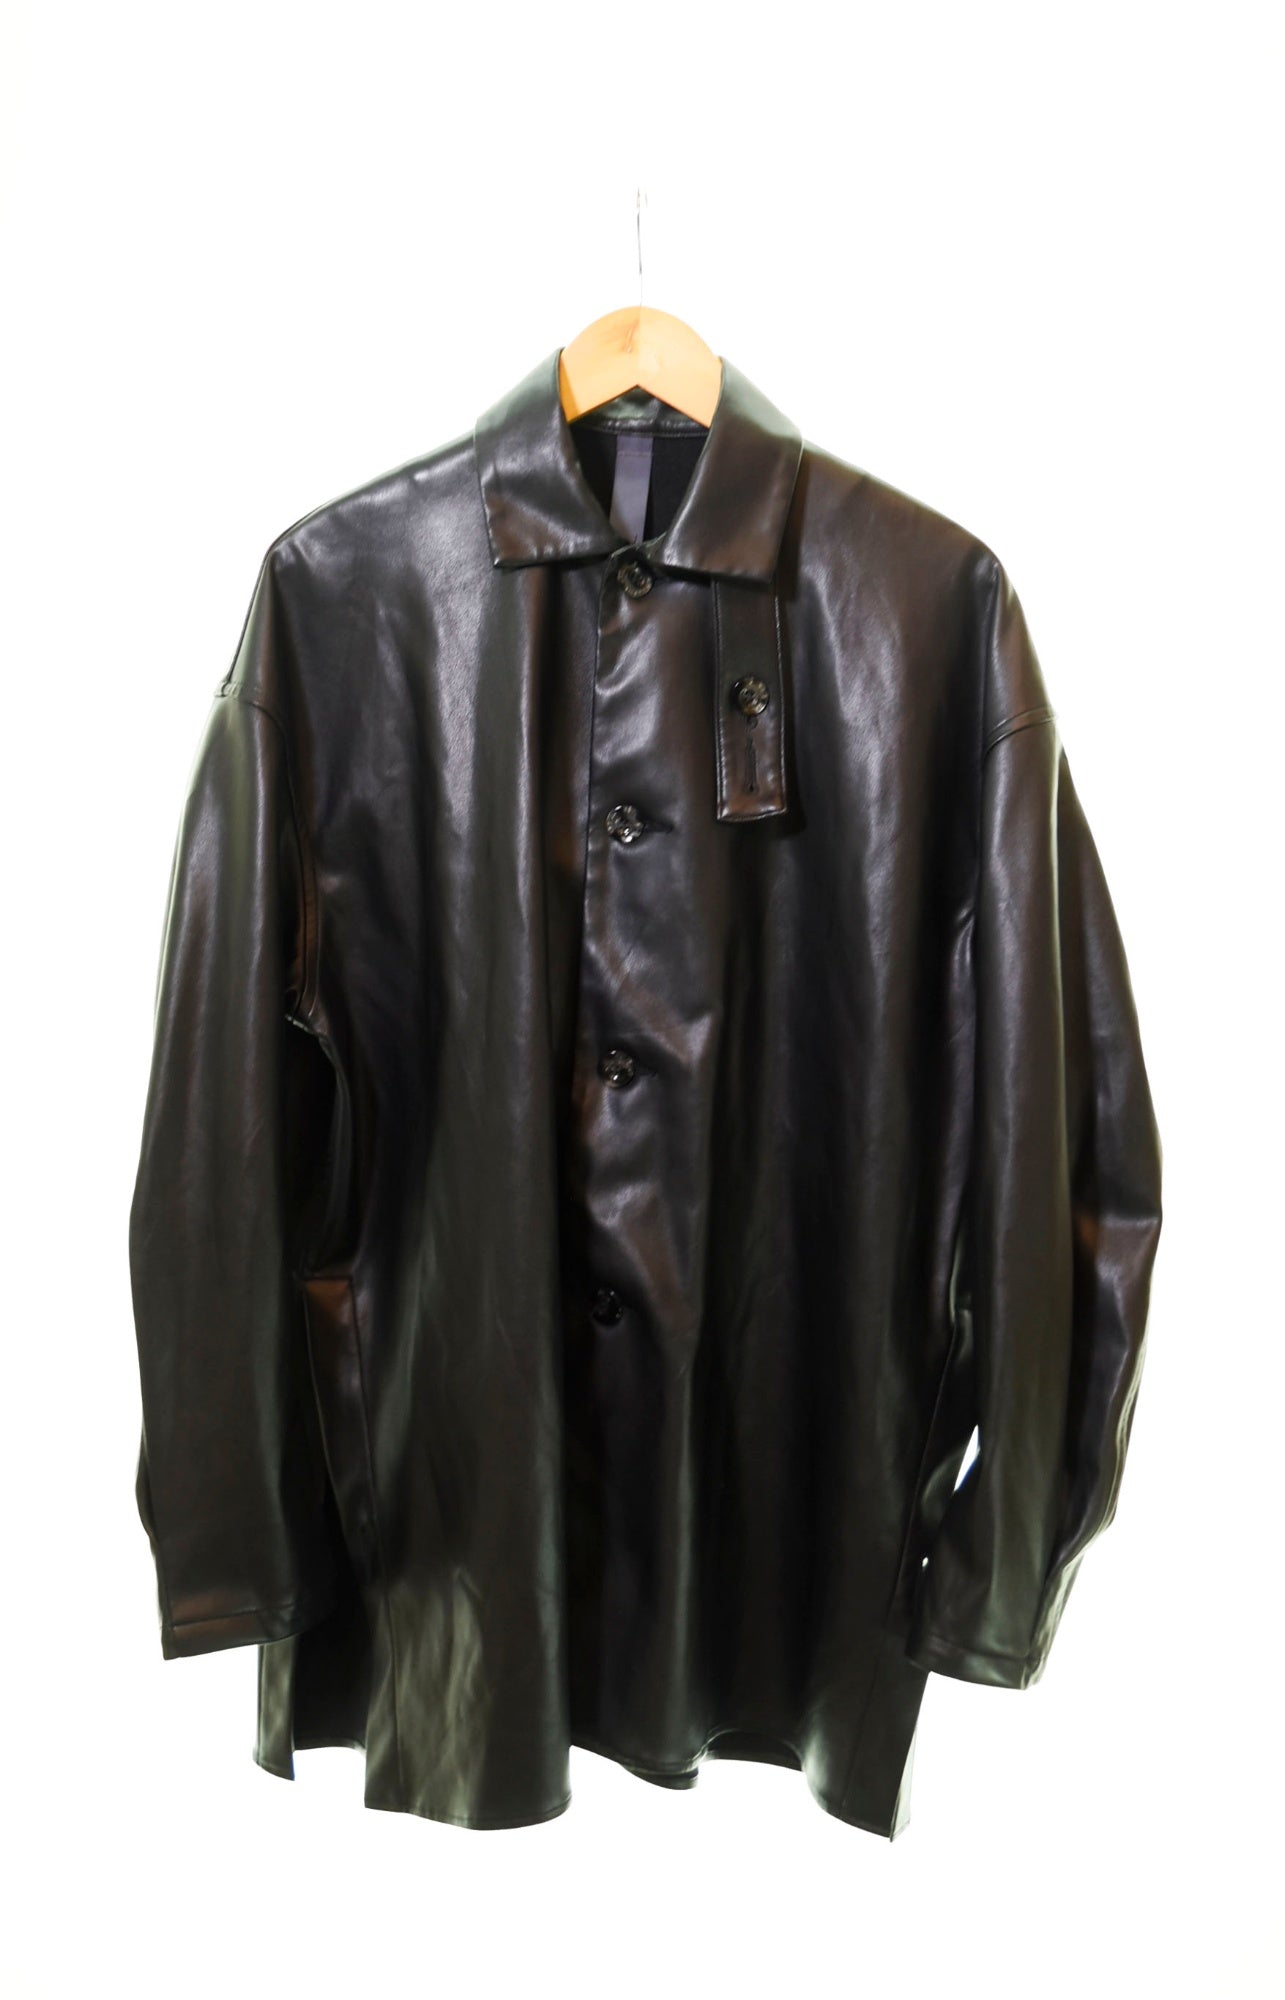 シンヤコズカ SHINYA KOZUKA MAC SHIRT シャツ 黒 20025K74 長袖シャツ 無地 ブラック Sサイズ 103MT-368